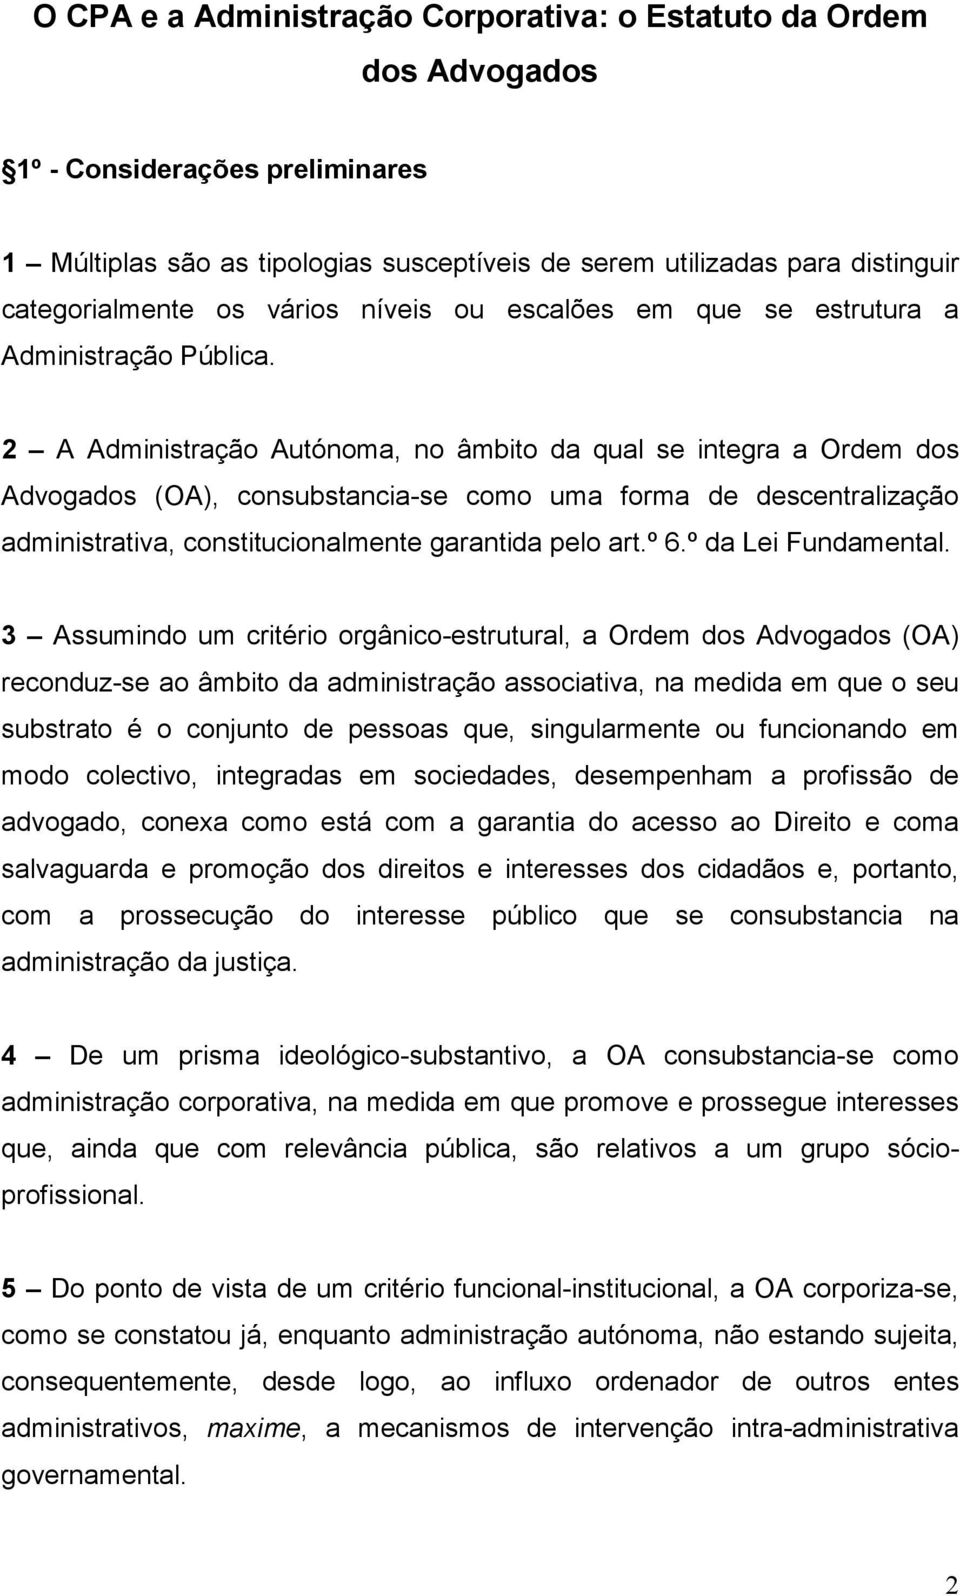 2 A Administração Autónoma, no âmbito da qual se integra a Ordem dos Advogados (OA), consubstancia-se como uma forma de descentralização administrativa, constitucionalmente garantida pelo art.º 6.